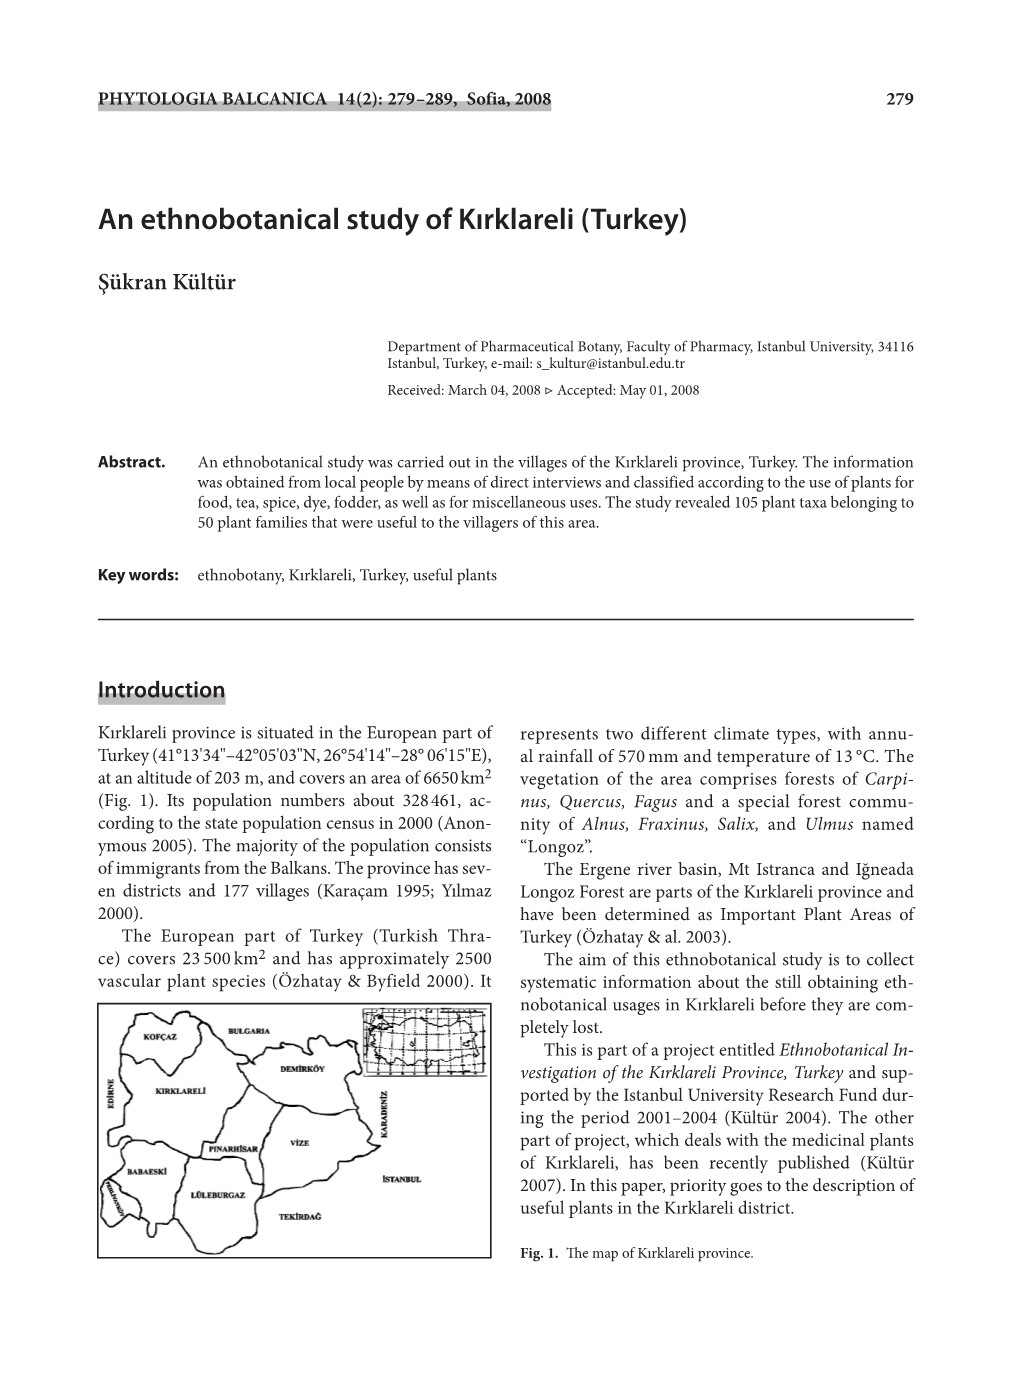 An Ethnobotanical Study of Kırklareli (Turkey)